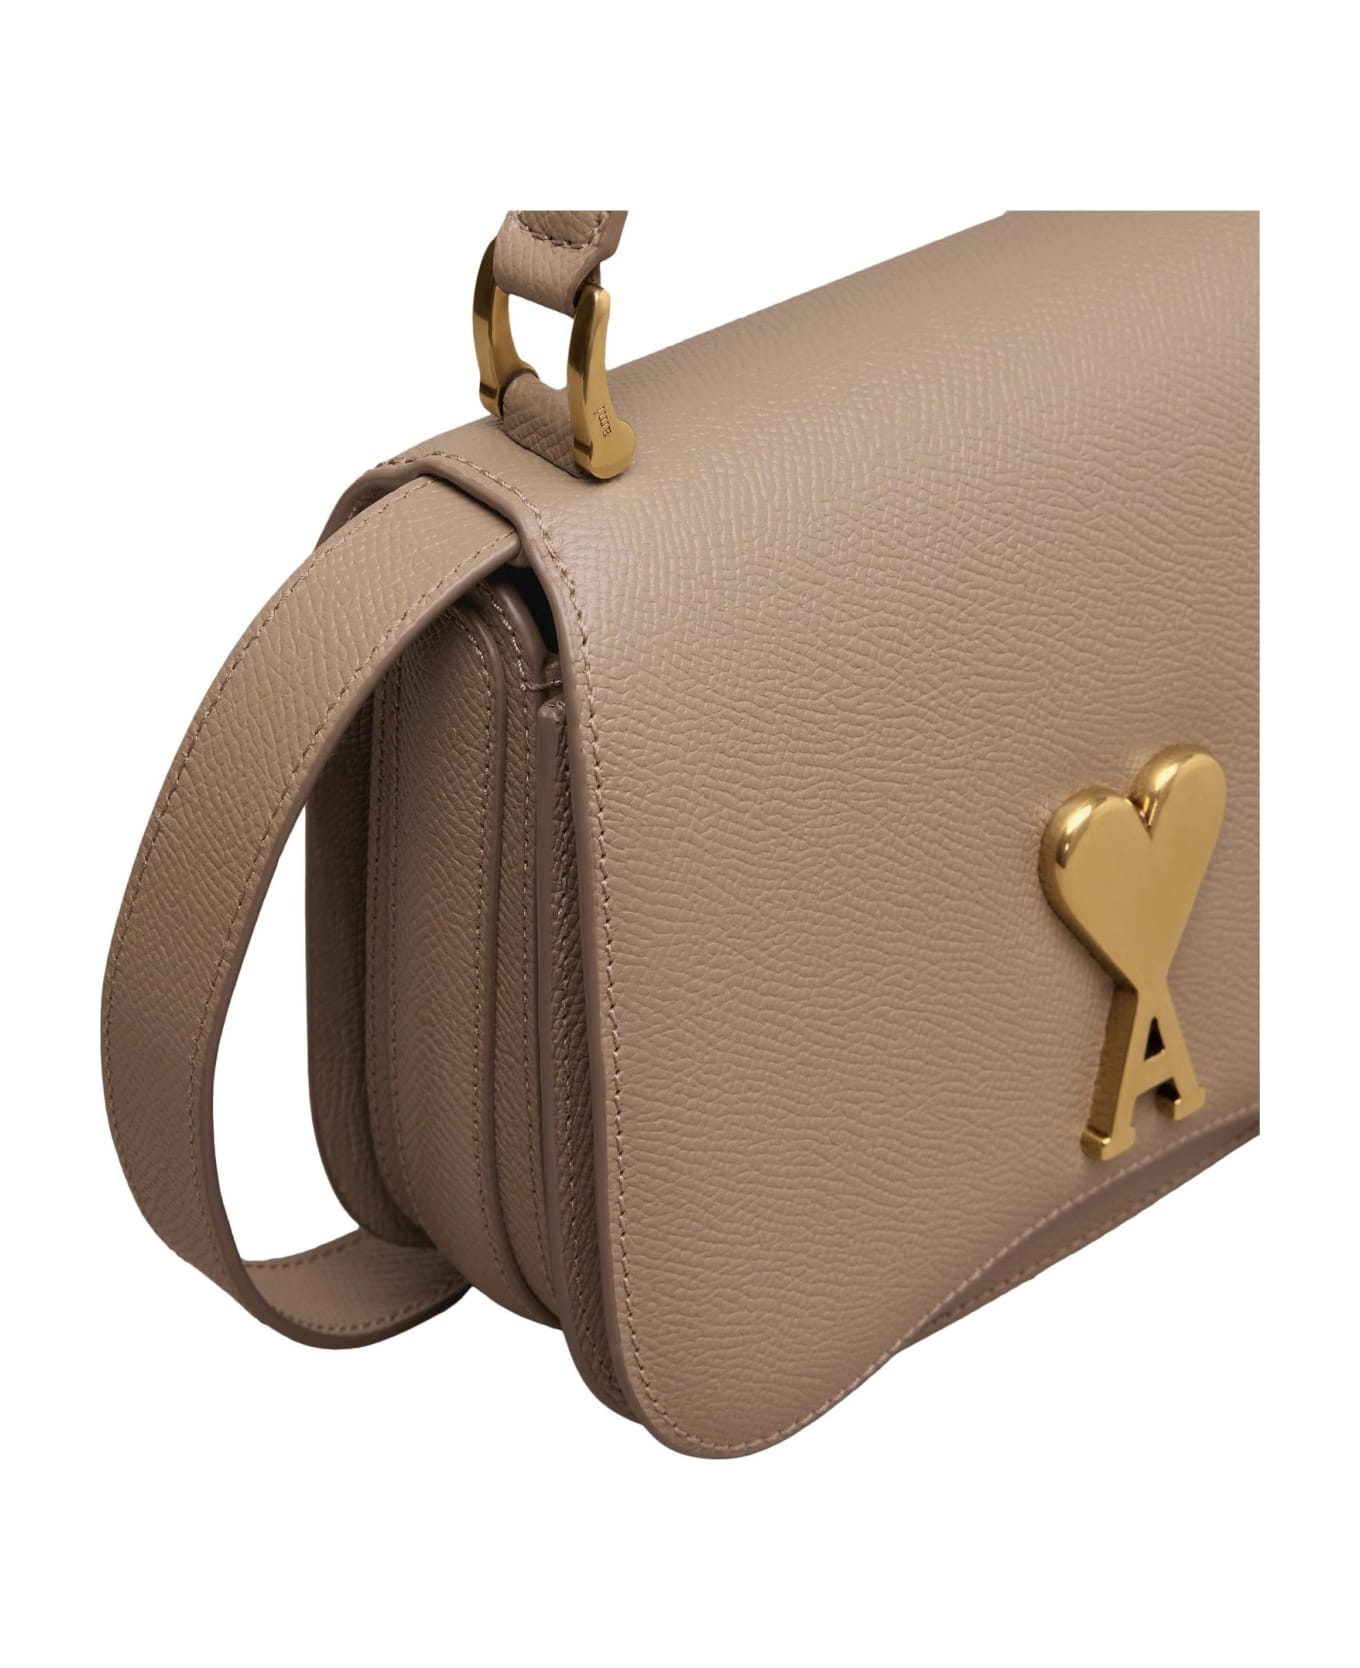 Ami Alexandre Mattiussi Mini Paris Paris Bag In Grained Leather - Brown